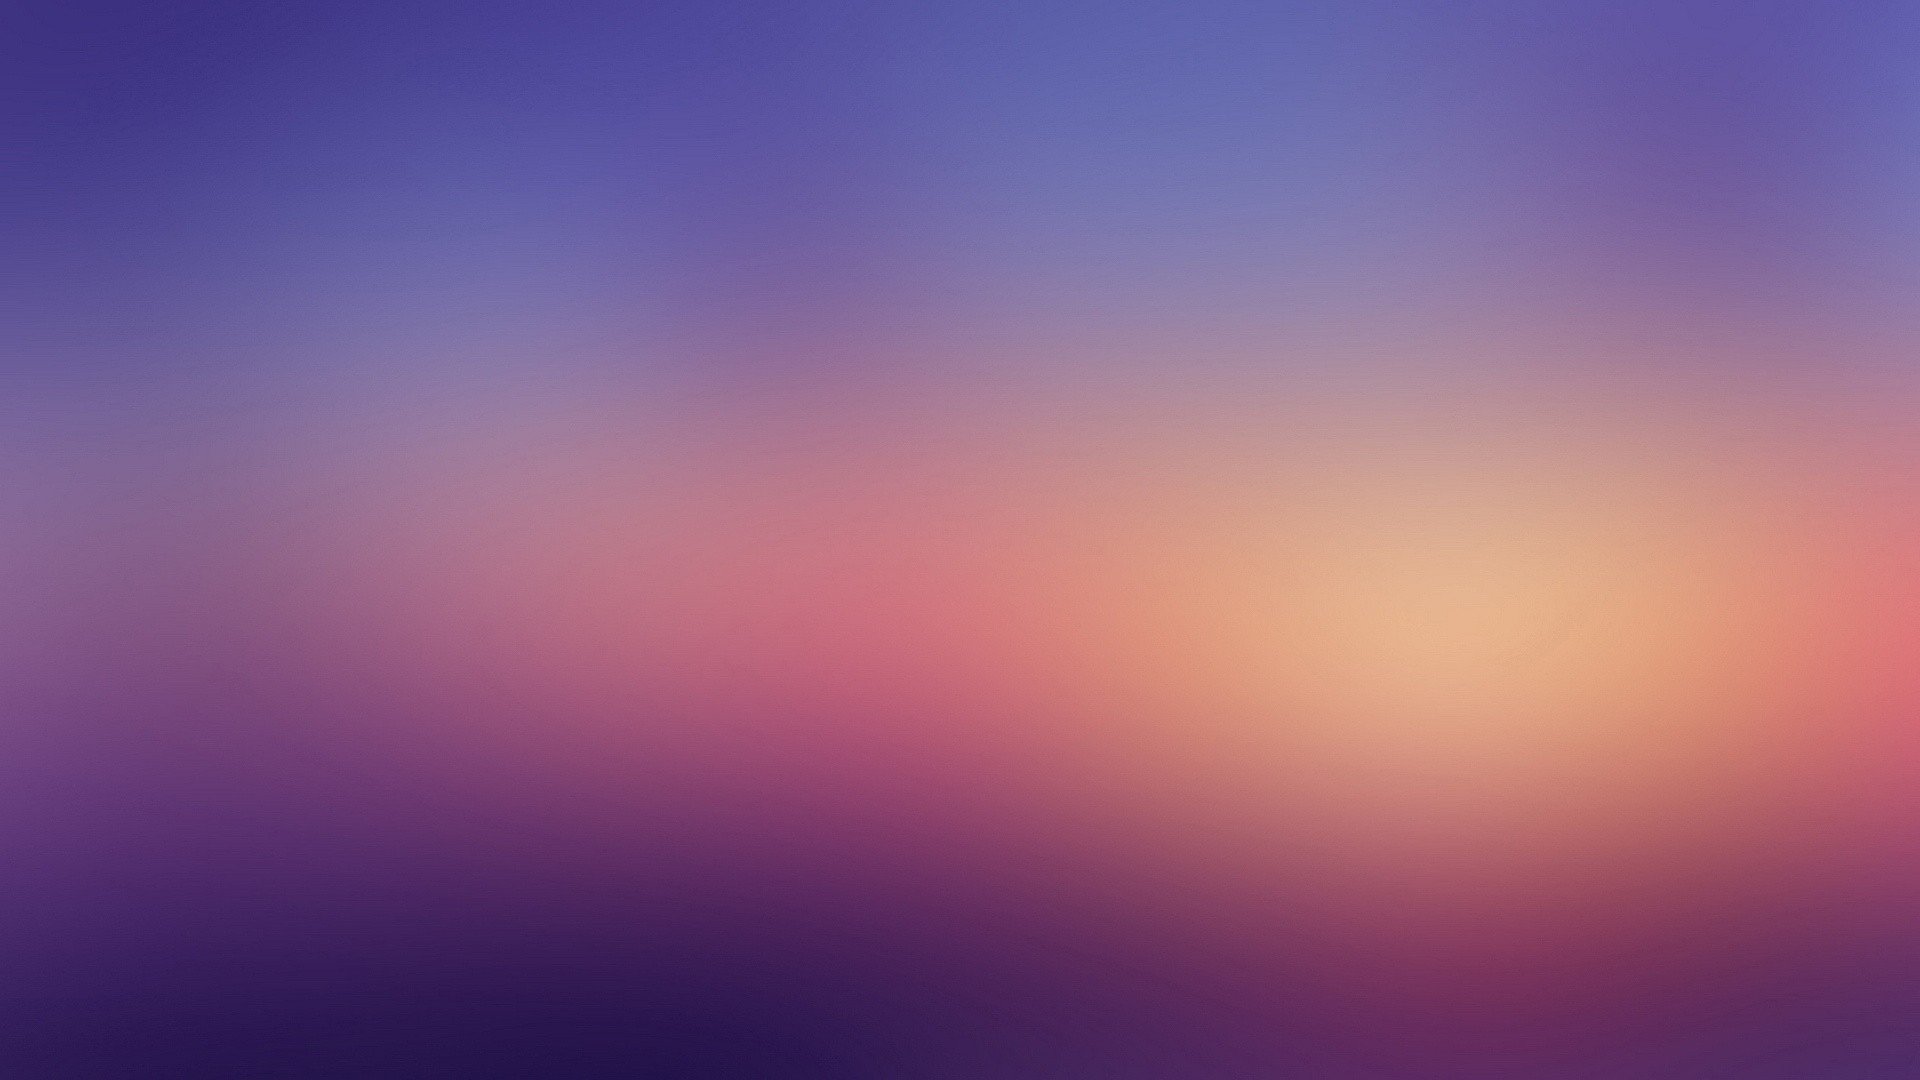 blur background